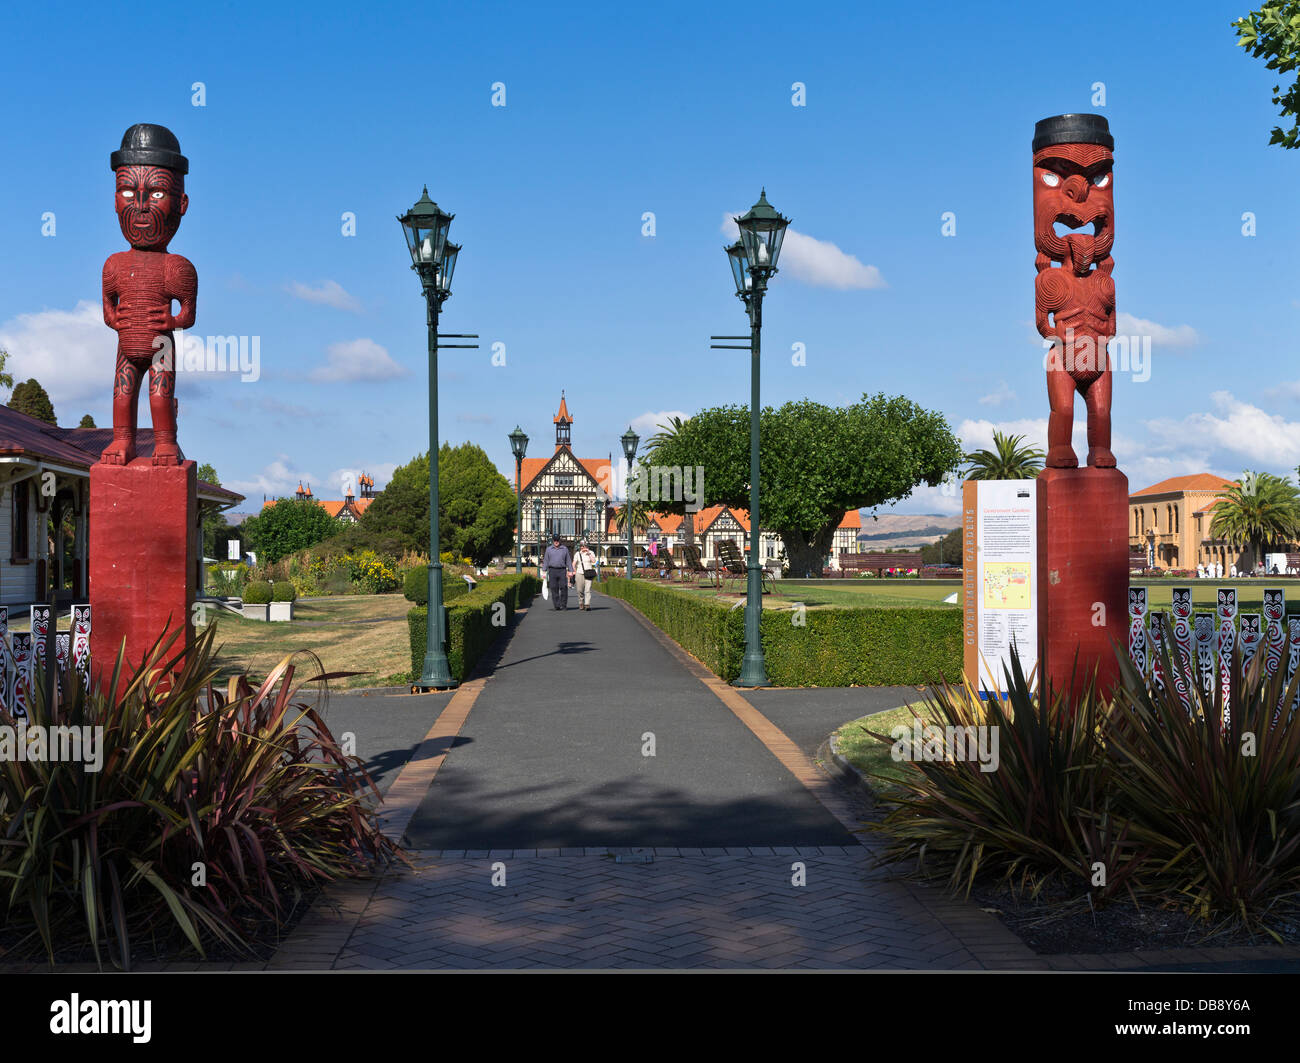 dh Regierungsgärten ROTORUA NEUSEELAND Touristen maori Schnitzereien Paepaekulana öffentlichen Park alten Bath House Museum Nordinsel Schnitzereien Stockfoto